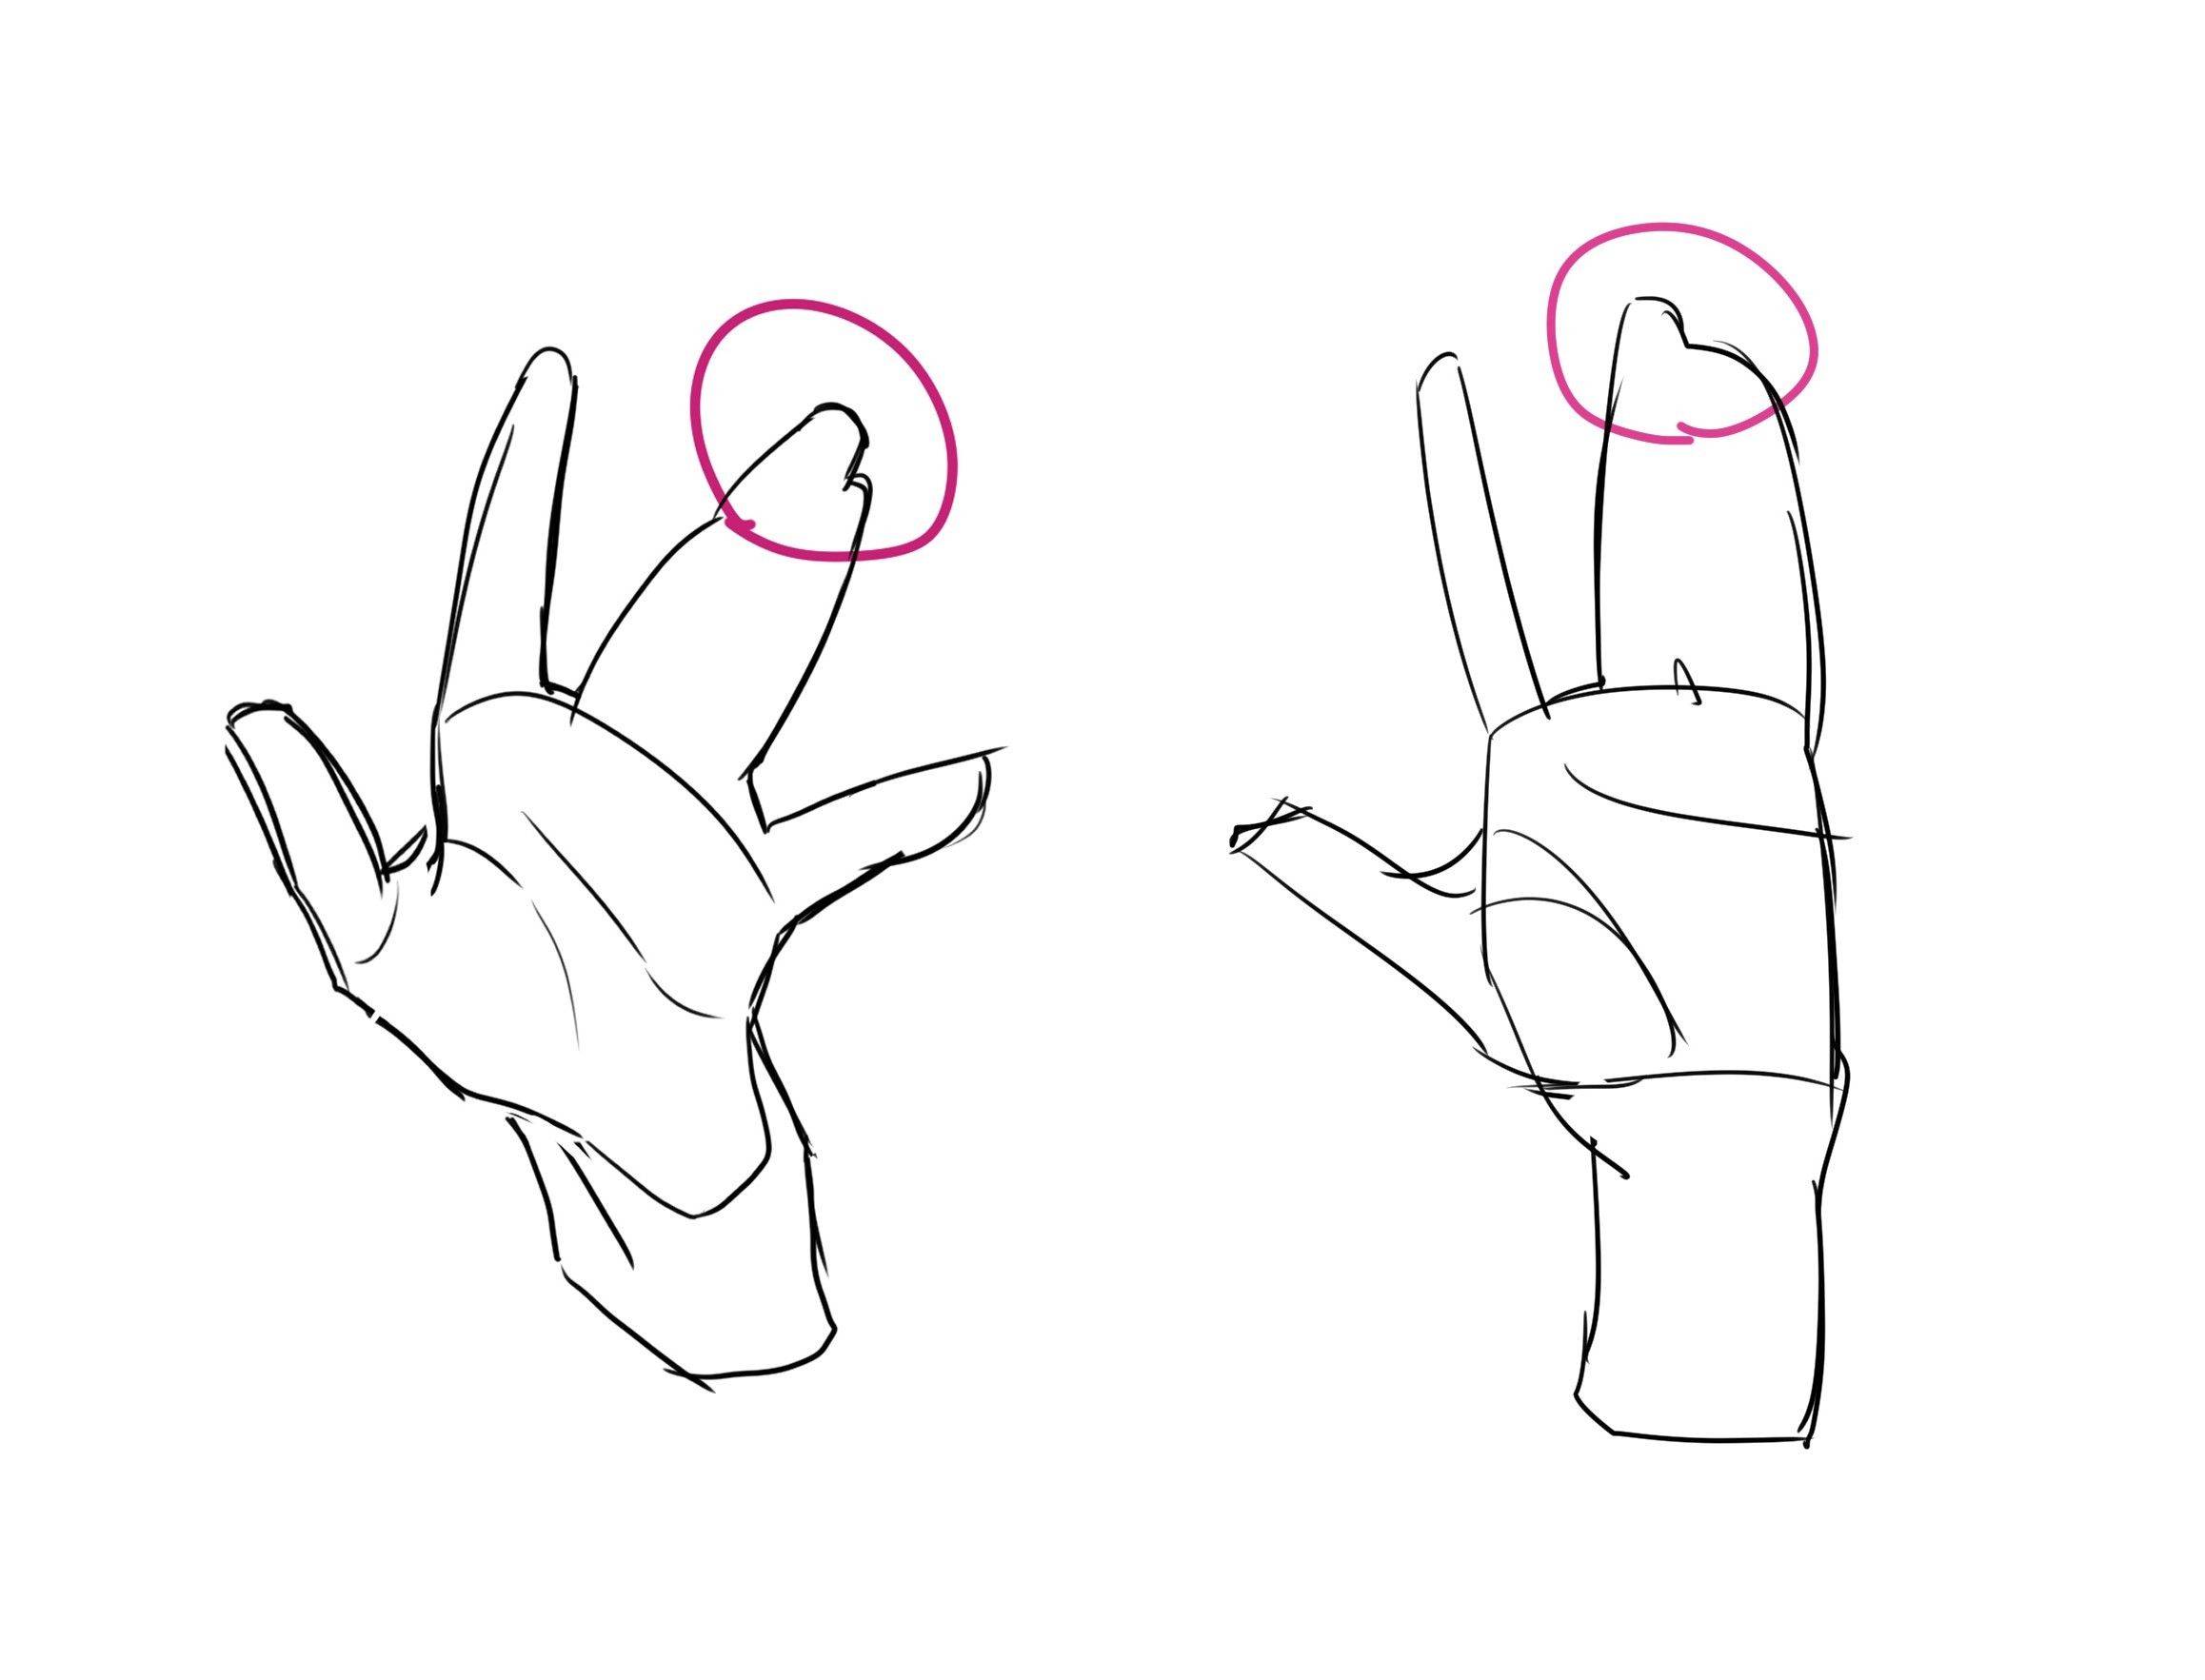 漫画手部结构教学教你简化手势和手部画法